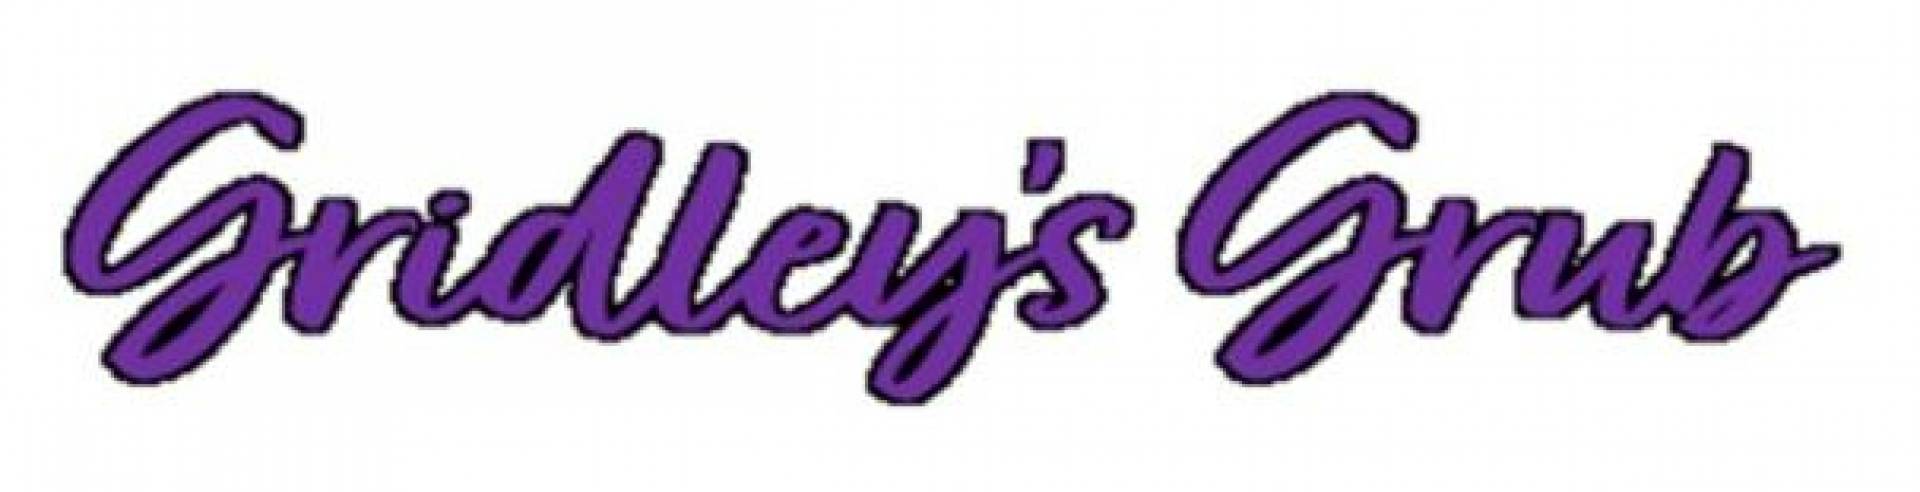 Gridley's Grub logo